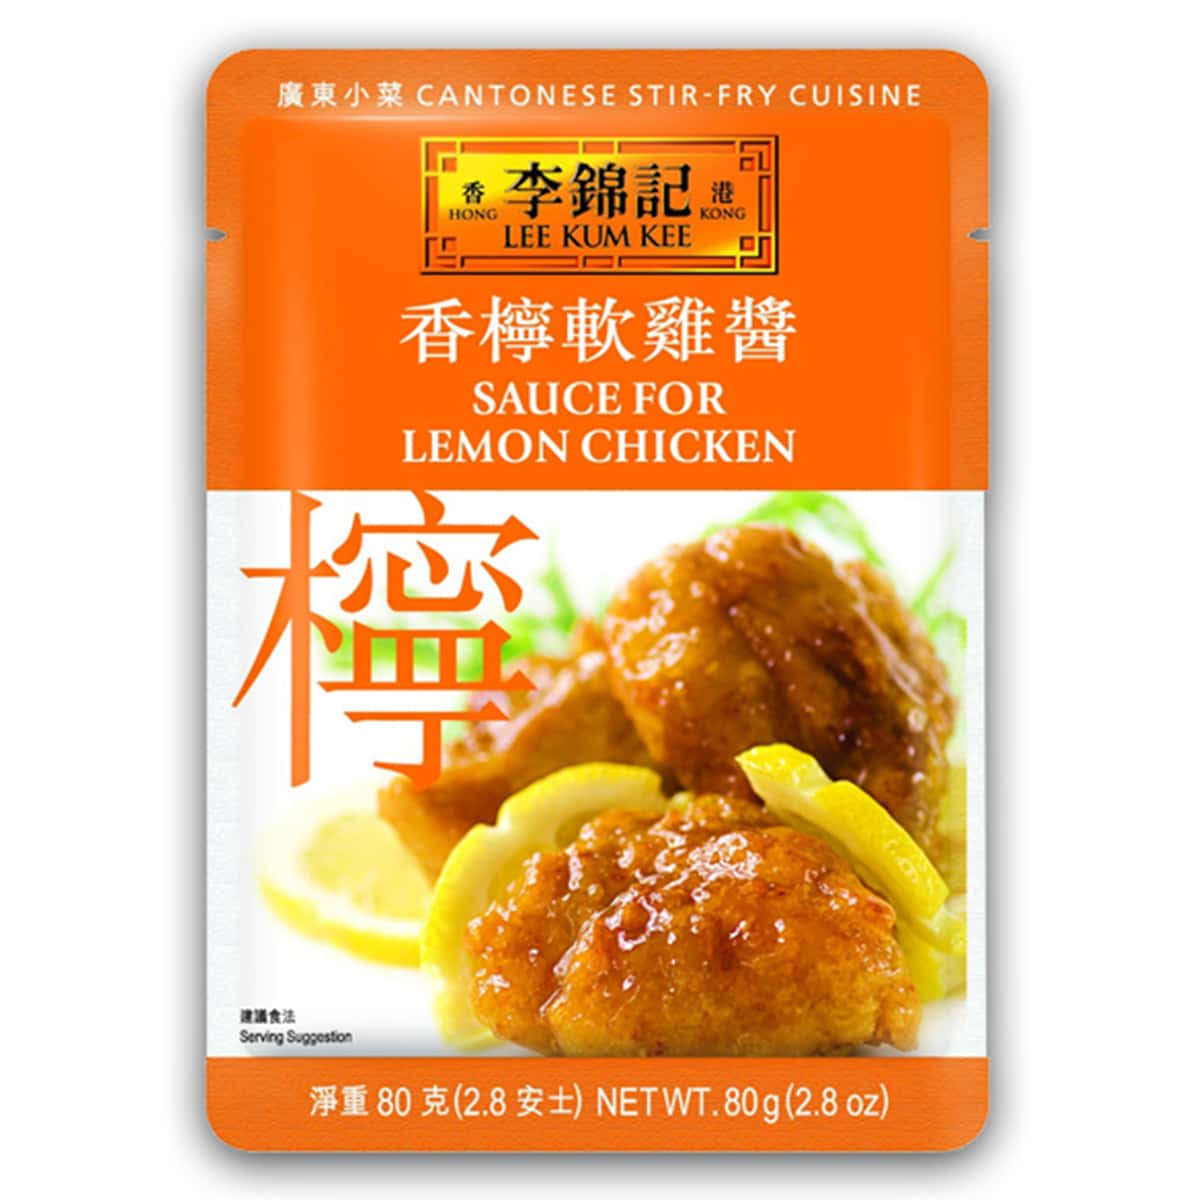 Buy Lee Kum Kee Sauce for Lemon Chicken - 80 gm